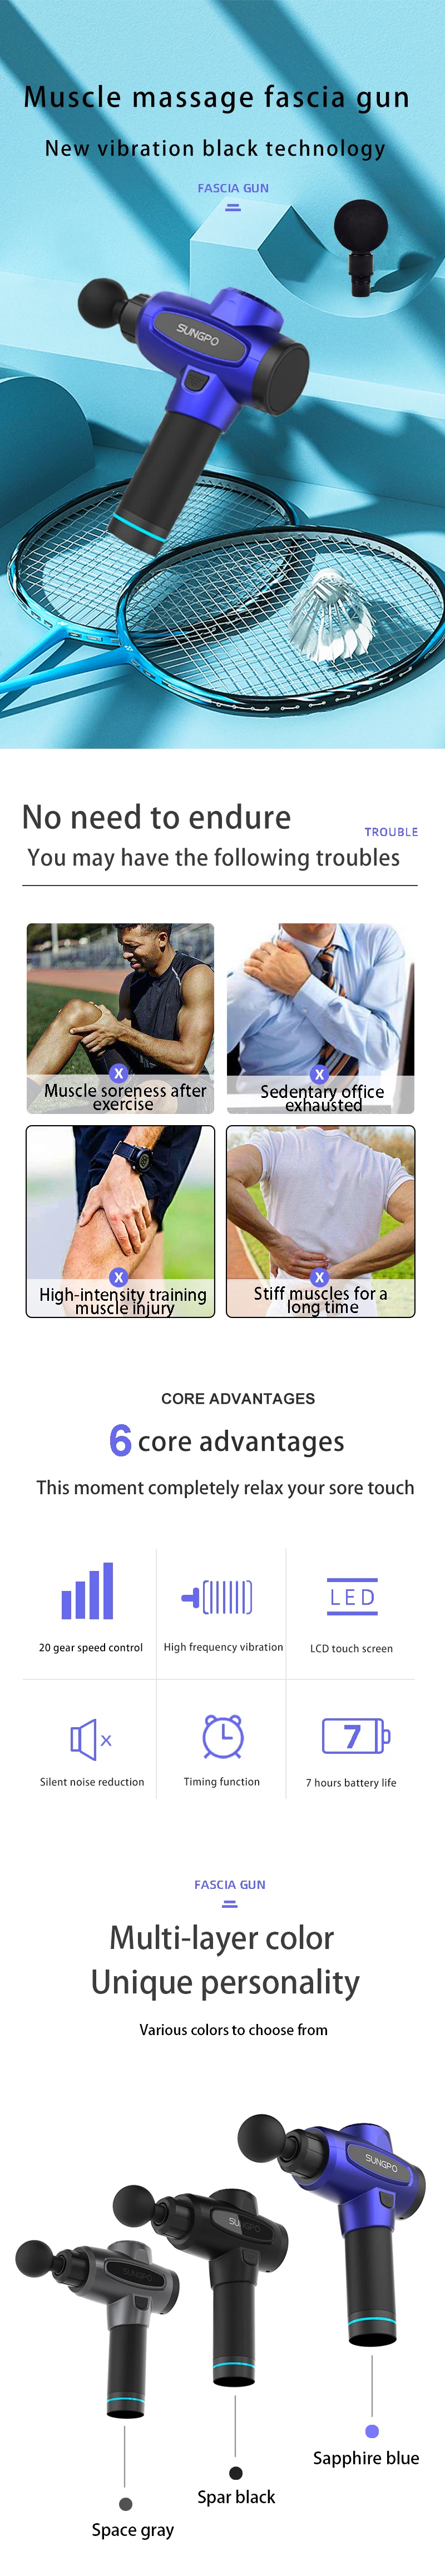 Best Body Fitness Equipment Deep Relaxation  Massager  Muscle Massage Gun